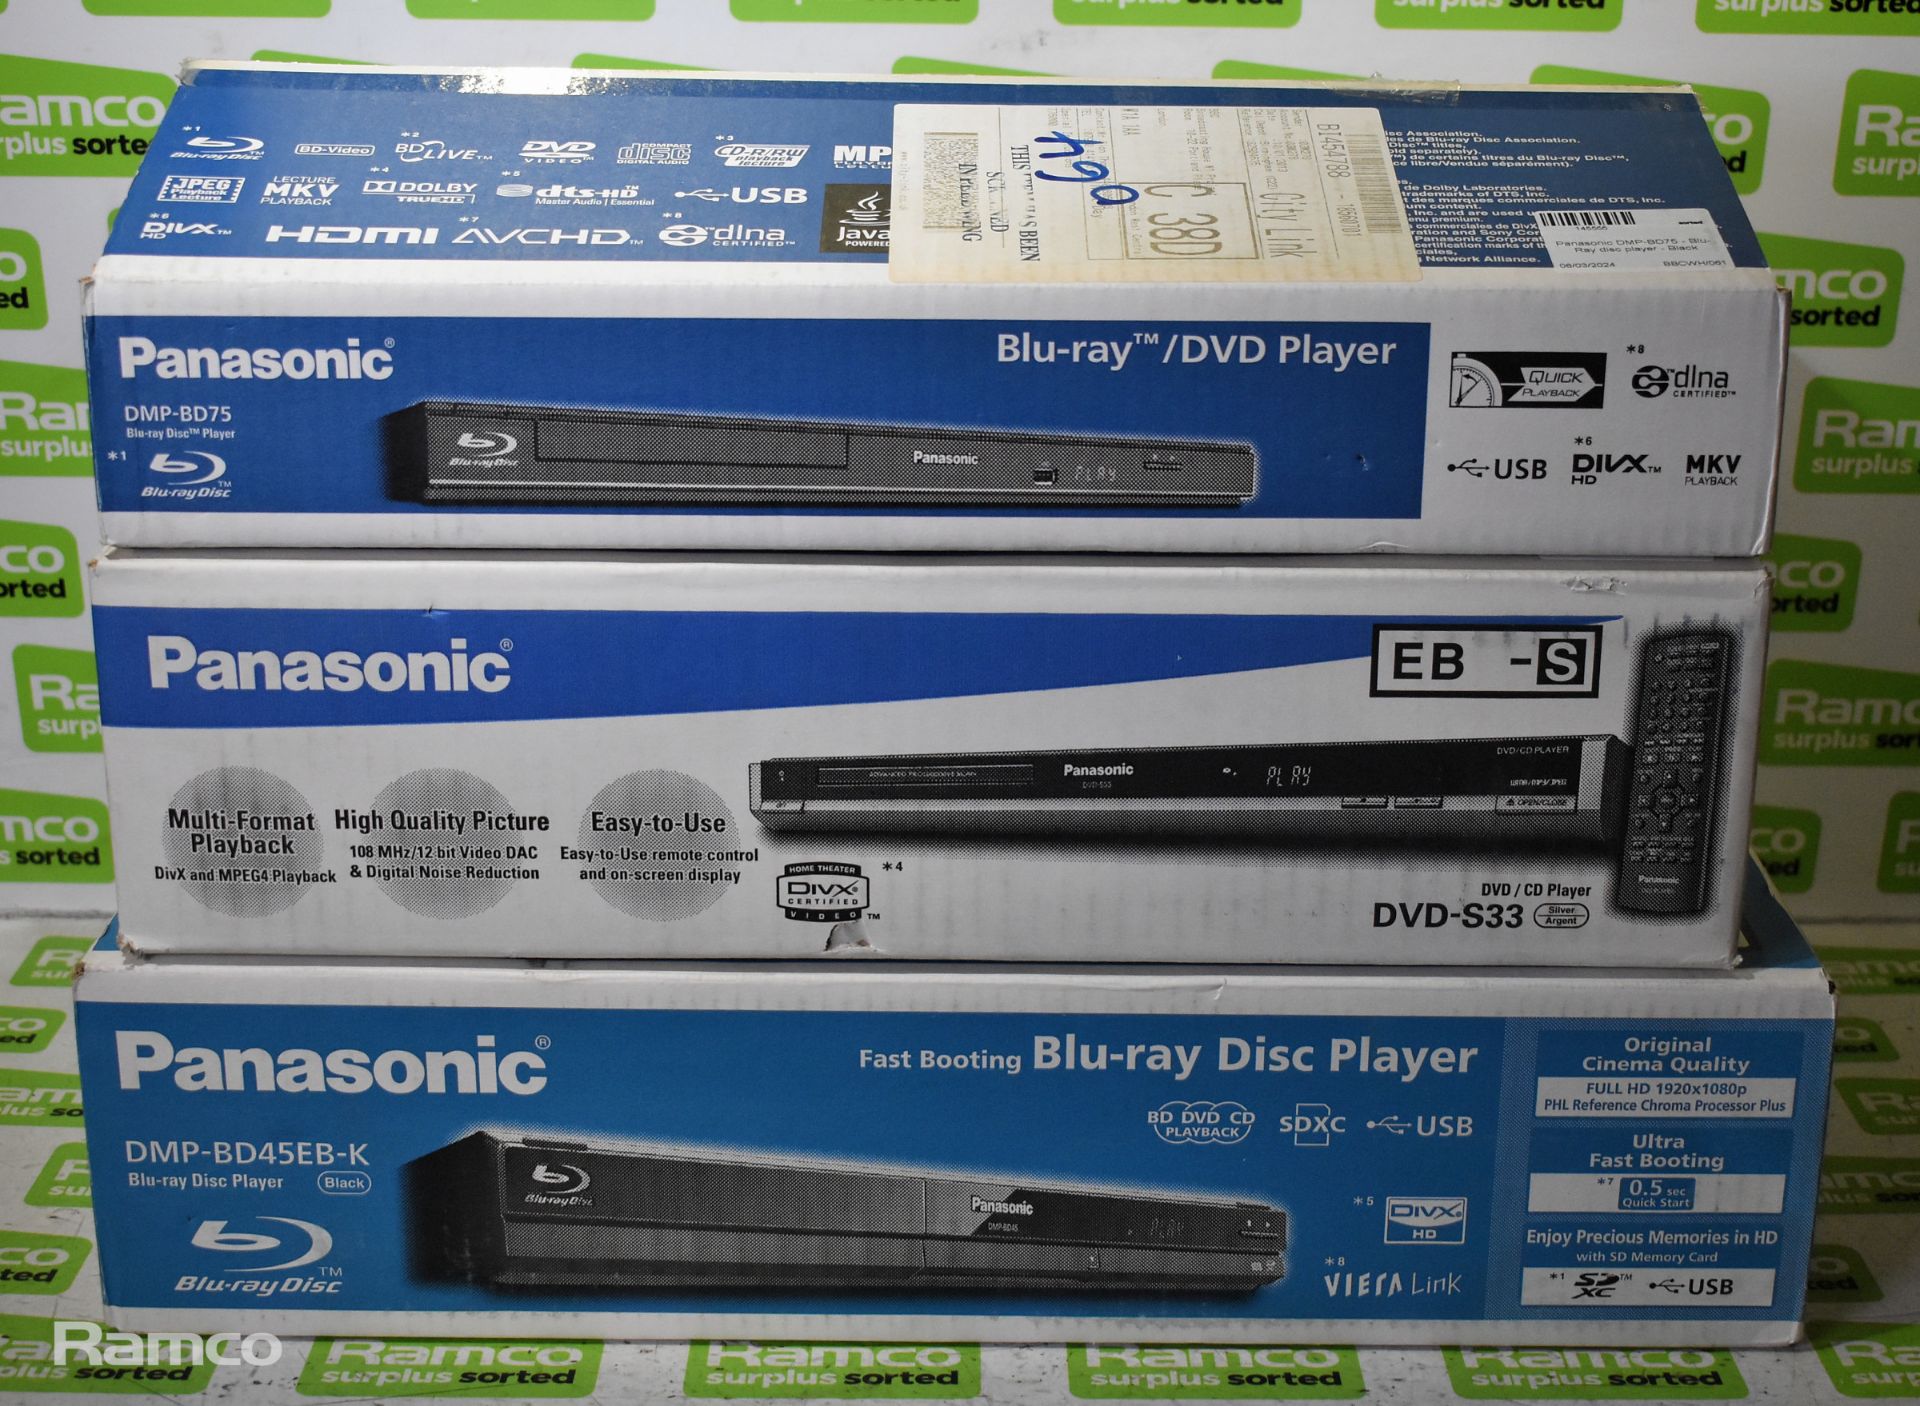 Panasonic DMP-BD45EB-K Blu-Ray disc player - Black, Panasonic DVD-S33 - DVD/CD player